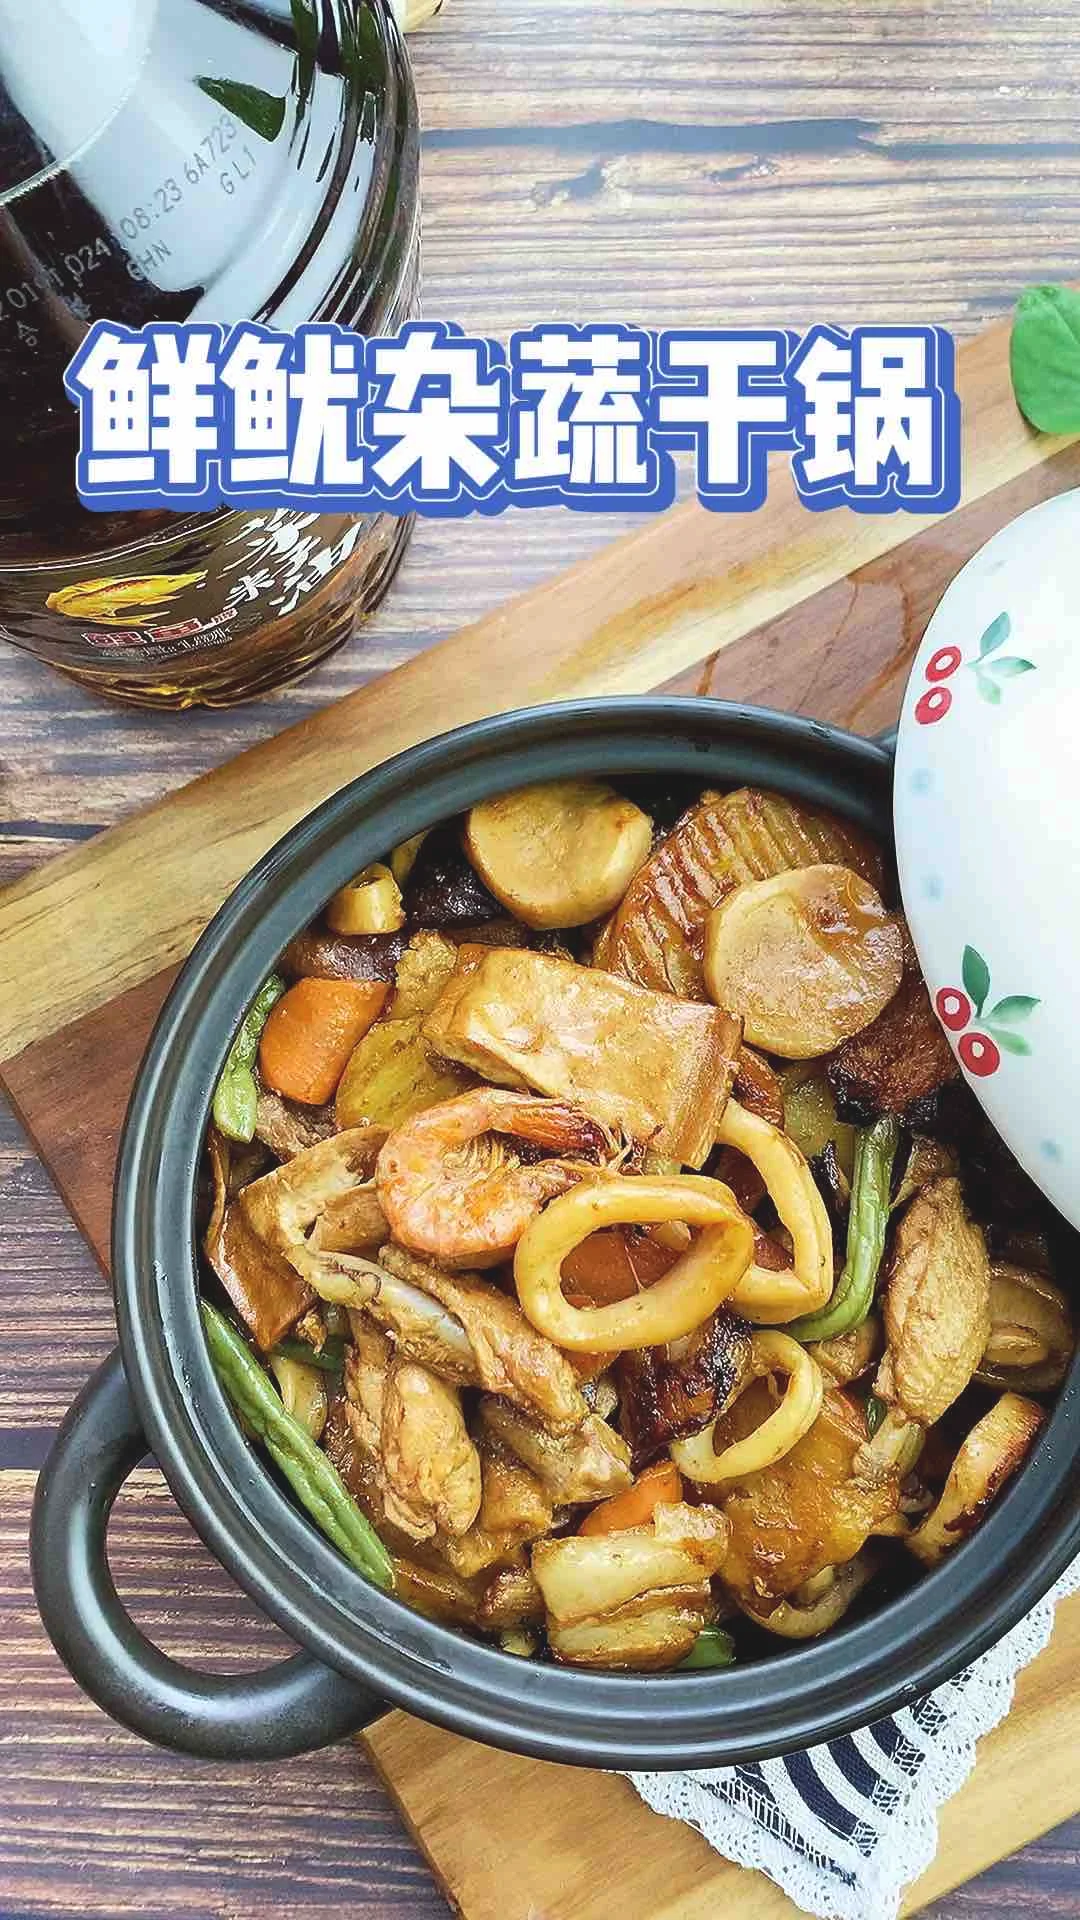 鲜鱿杂蔬干锅的做法-麻辣味烧菜谱